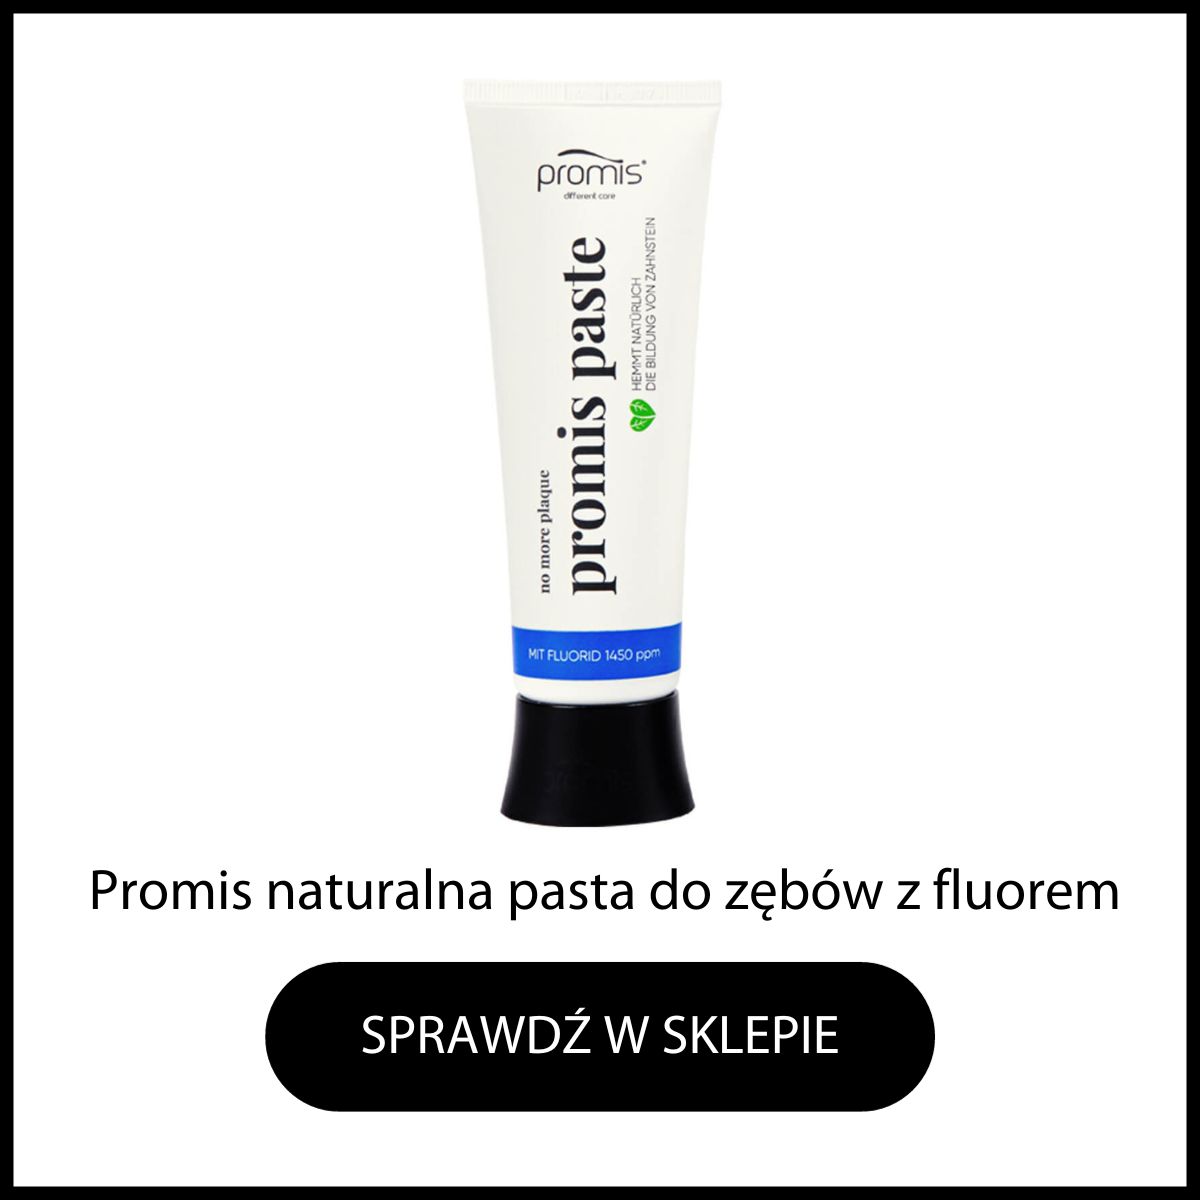 Promis naturalna pasta do zębów z fluorem